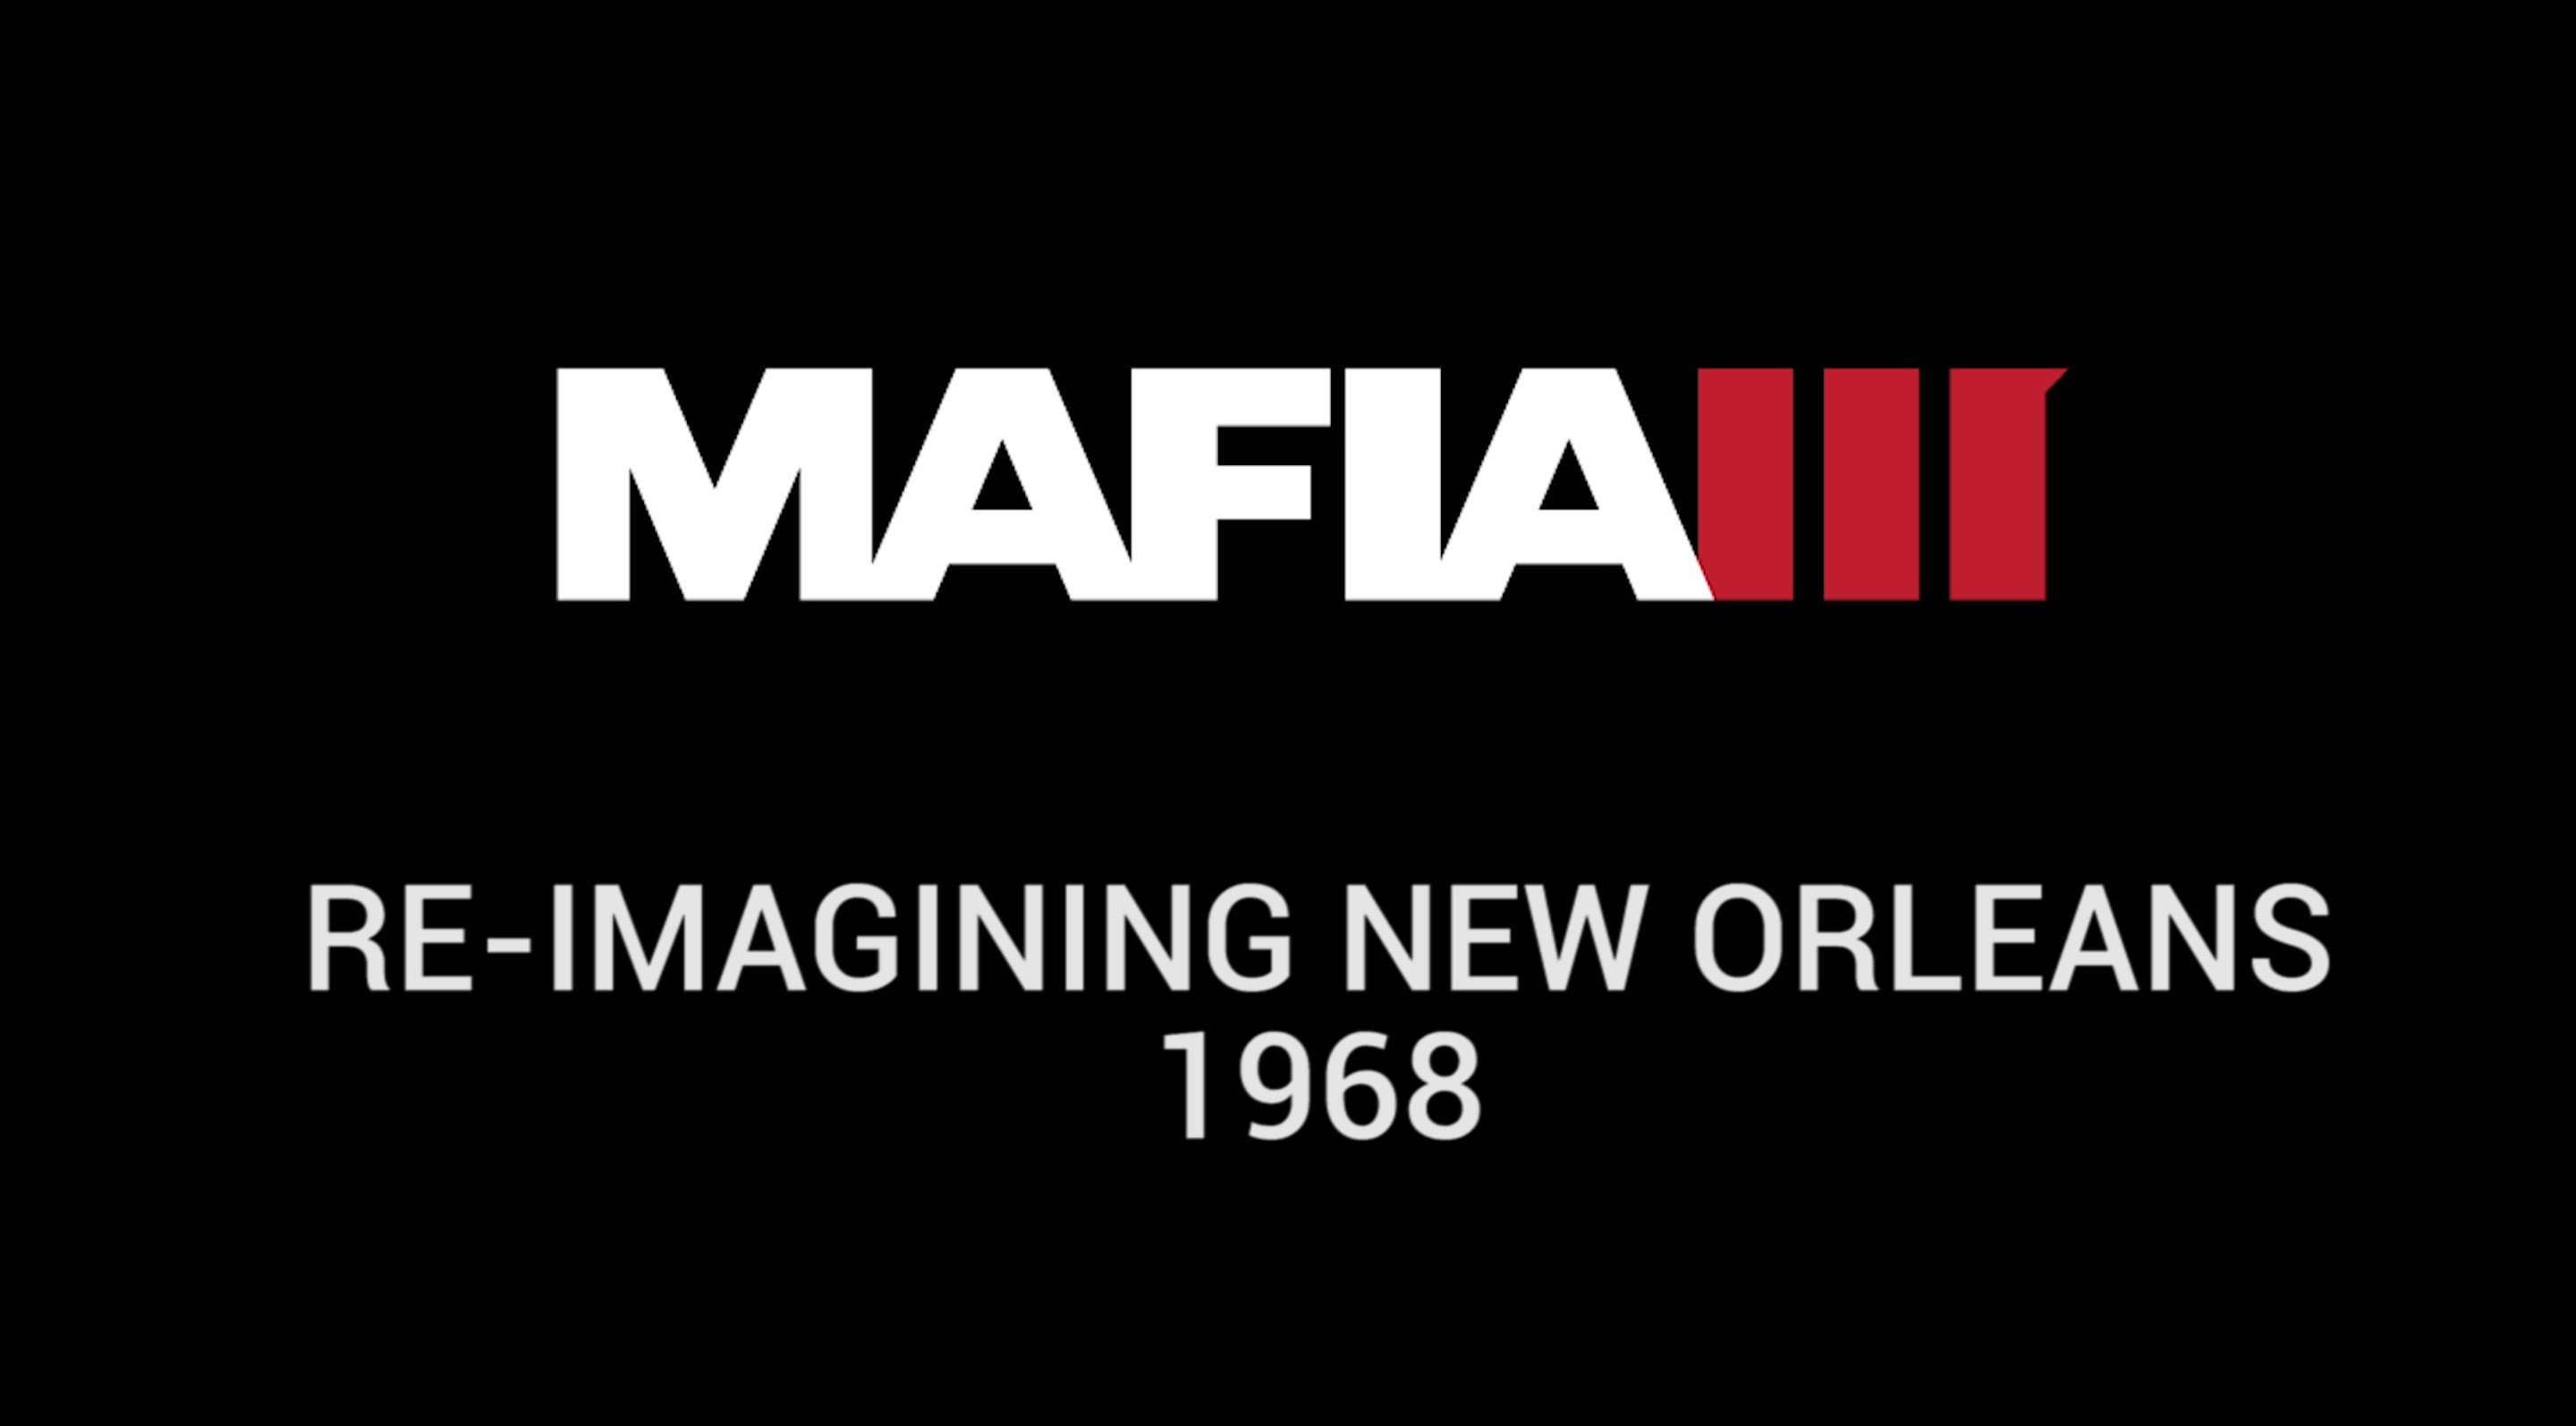 Mafia III Inside Look - Re-imagining New Orleans 1968